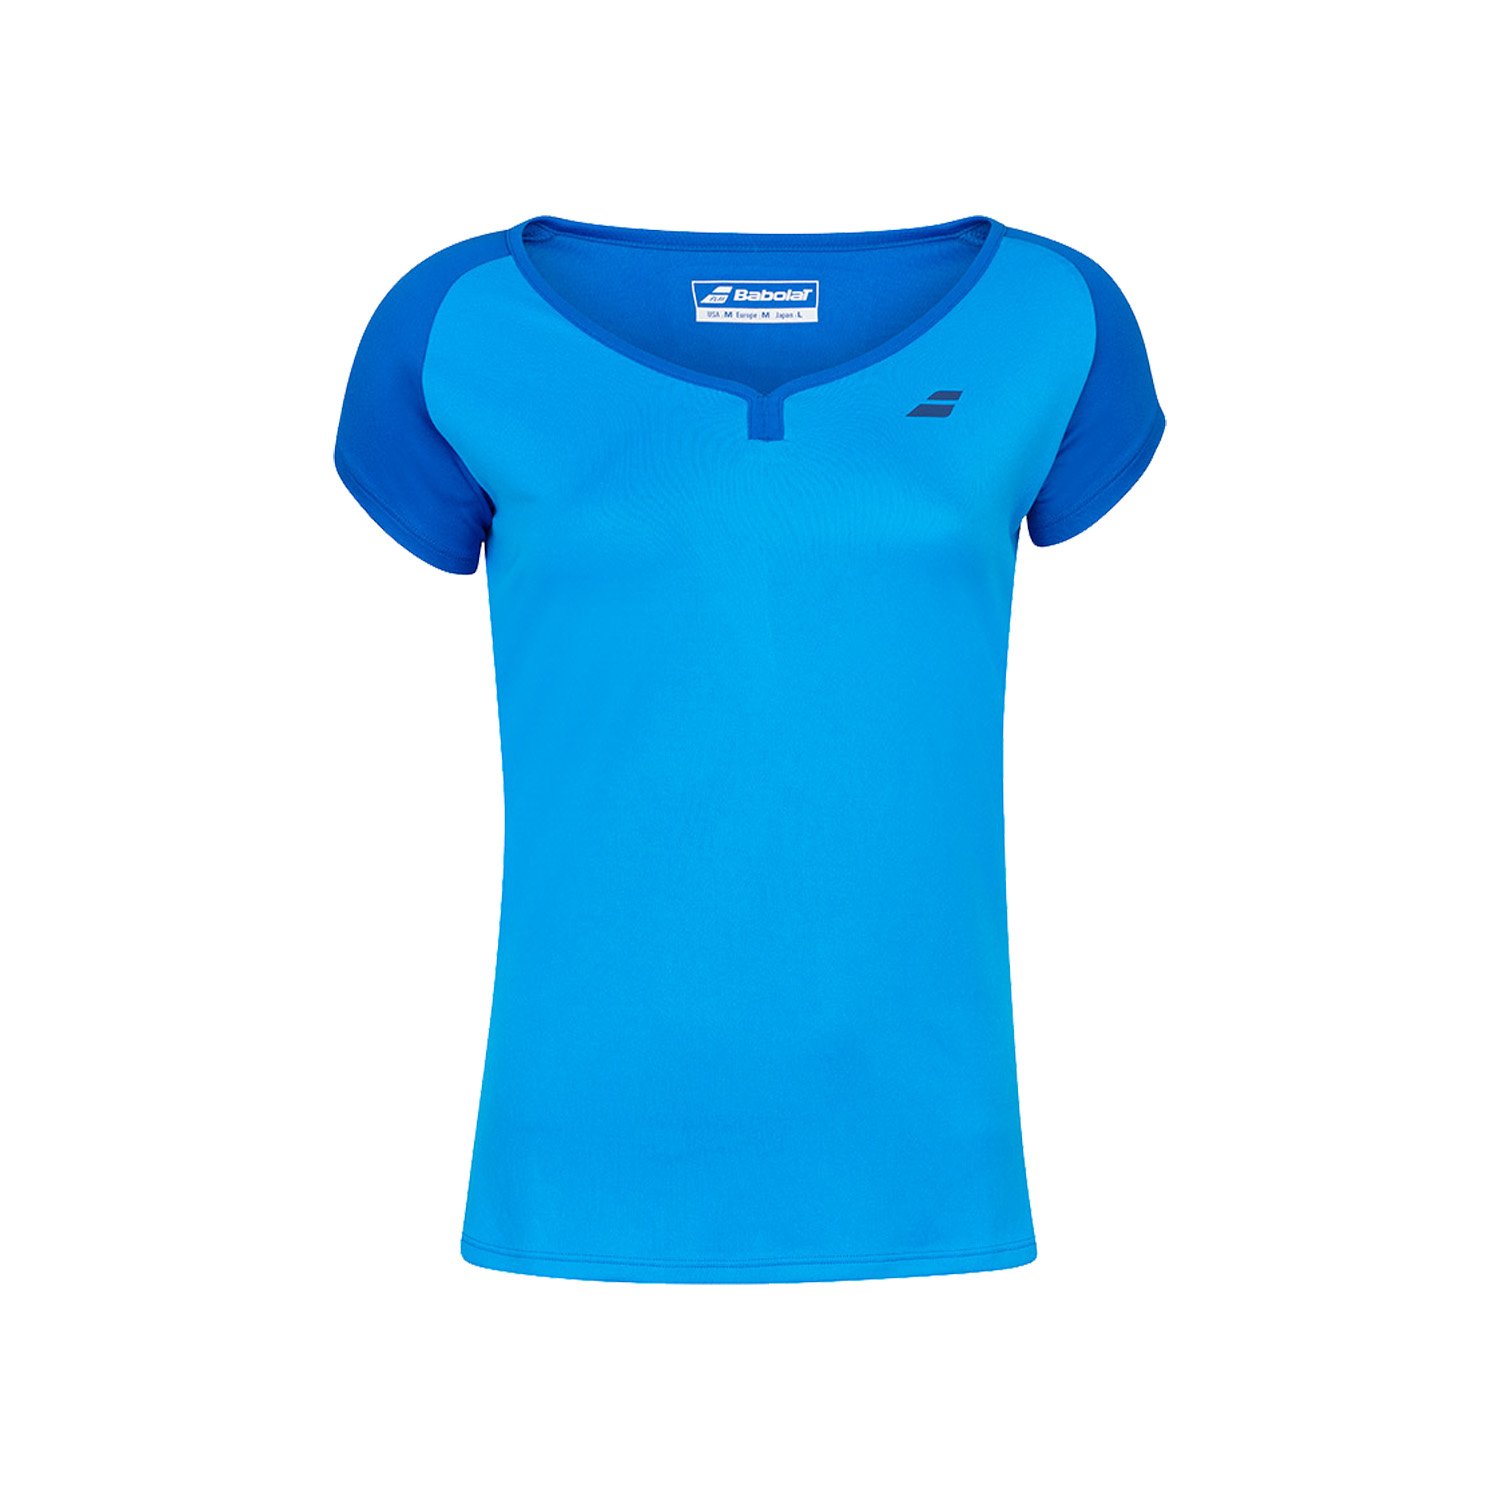 Babolat Play Cap Kadın Tenis Tişörtü - Mavi - 1